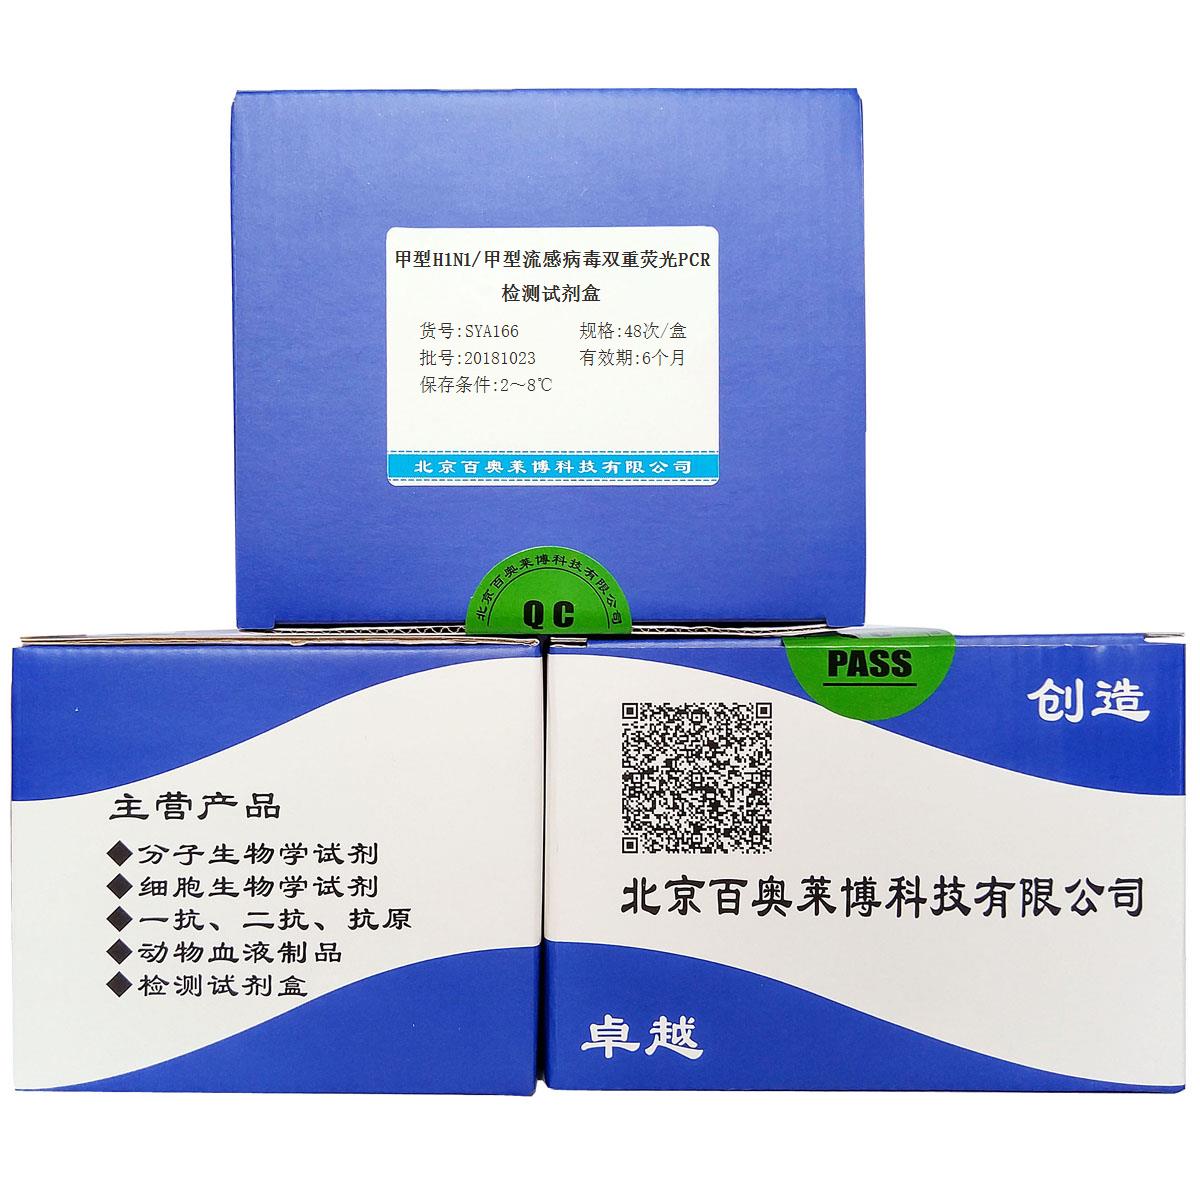 甲型H1N1/甲型流感病毒双重荧光PCR检测试剂盒